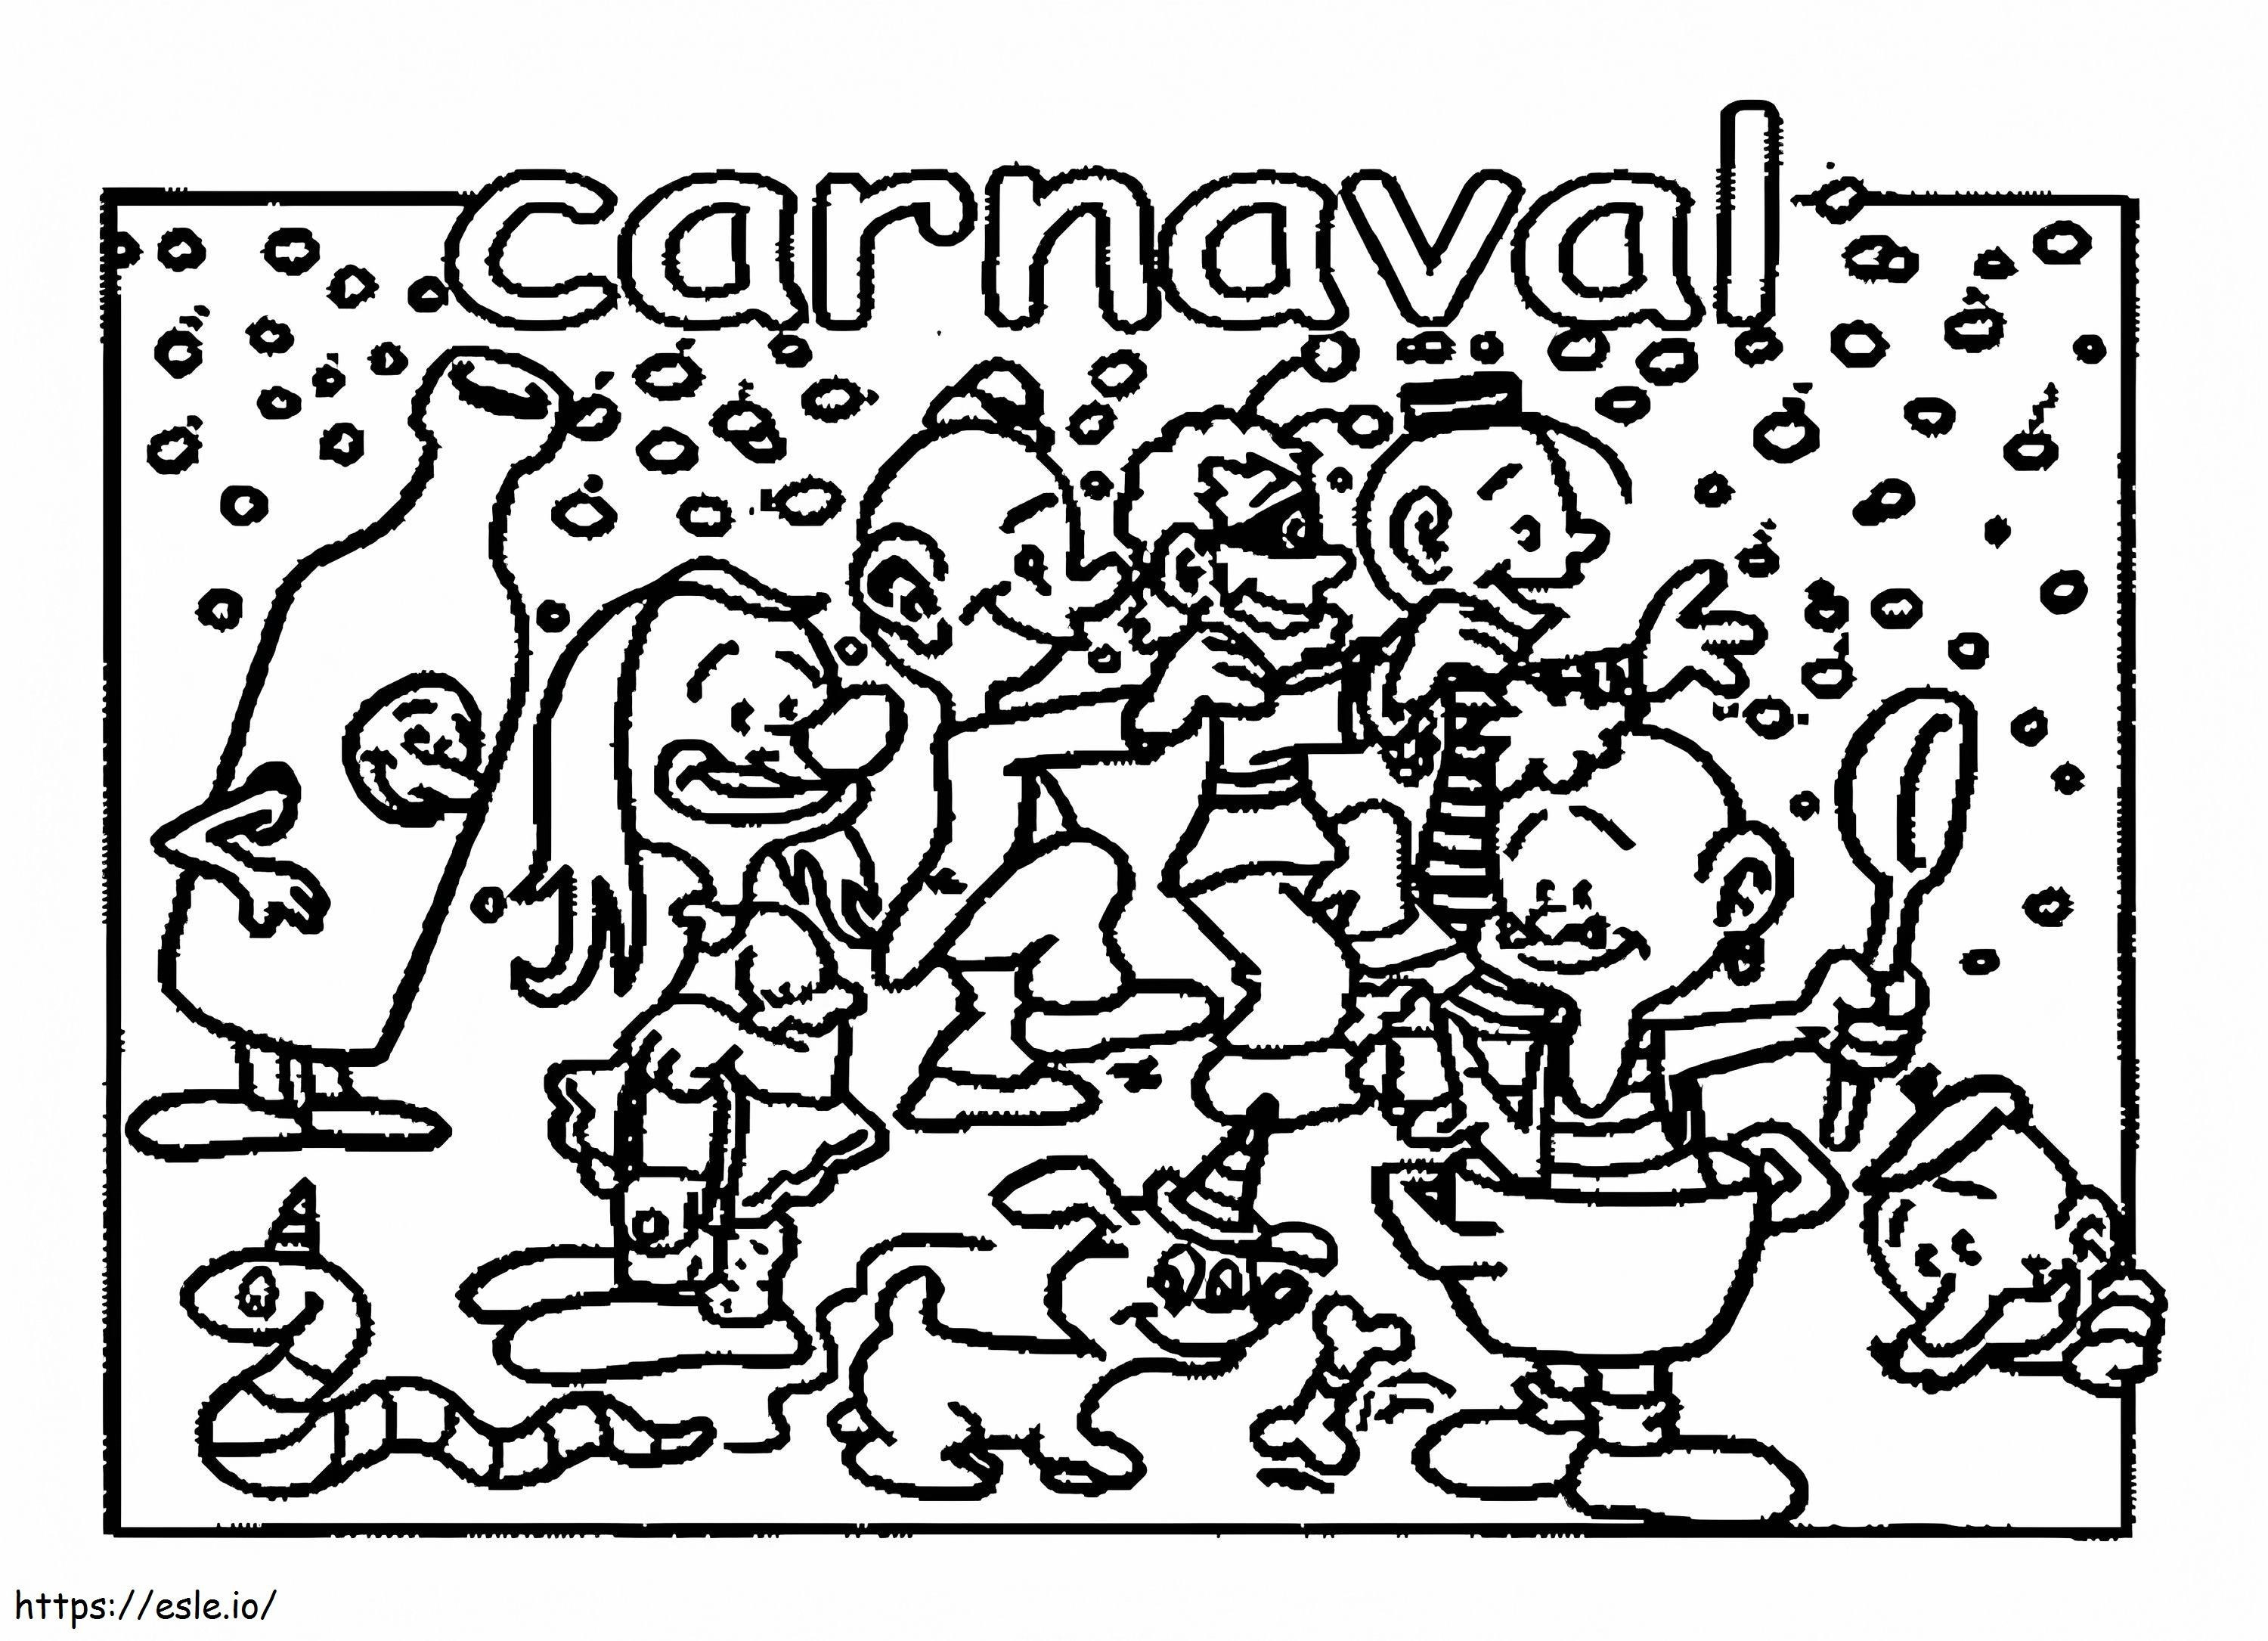 Carnevale 3 da colorare